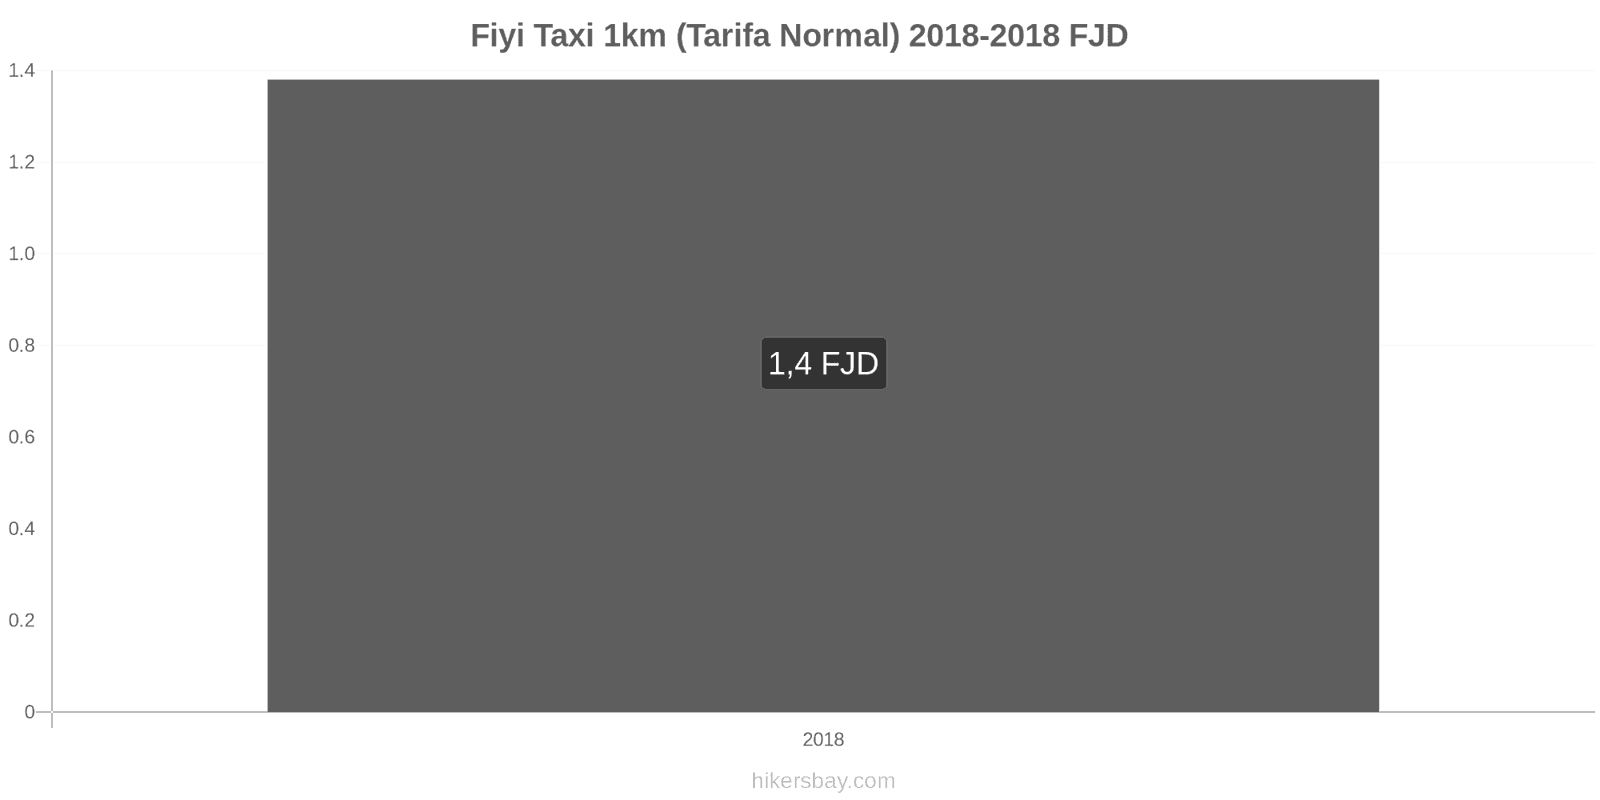 Fiyi cambios de precios Taxi 1km (tarifa normal) hikersbay.com